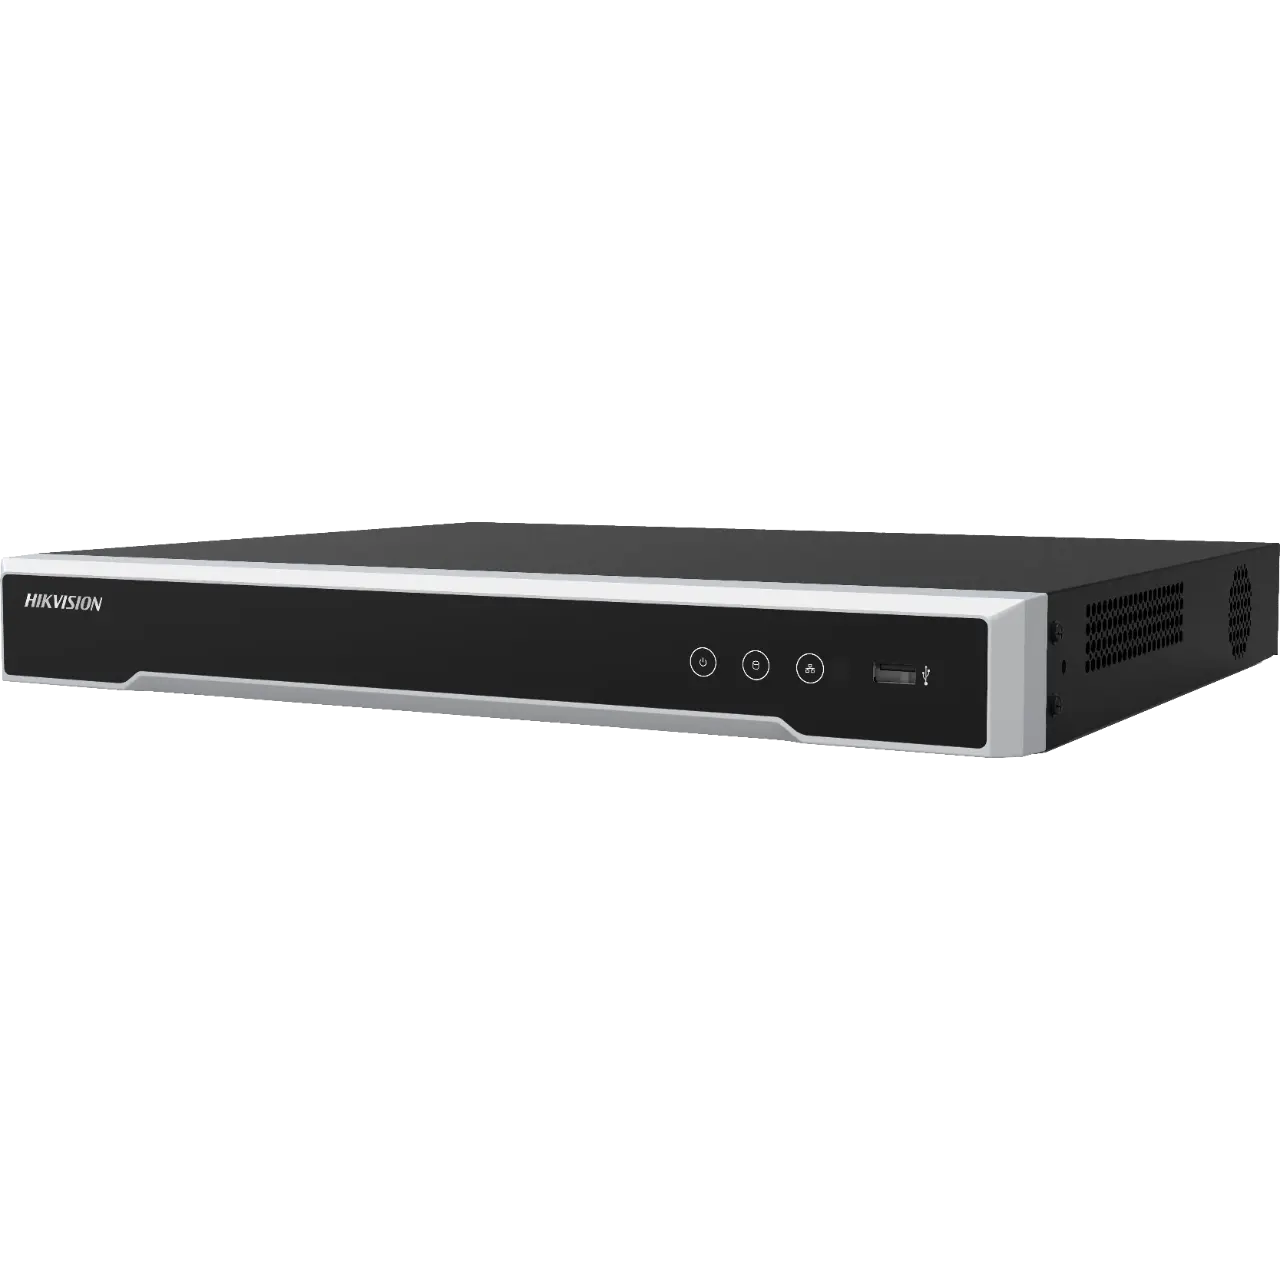 Hikvision DS-7616NI-Q2(STD)(D), 16-ch 1U 4K NVR, up to 16-ch IP video